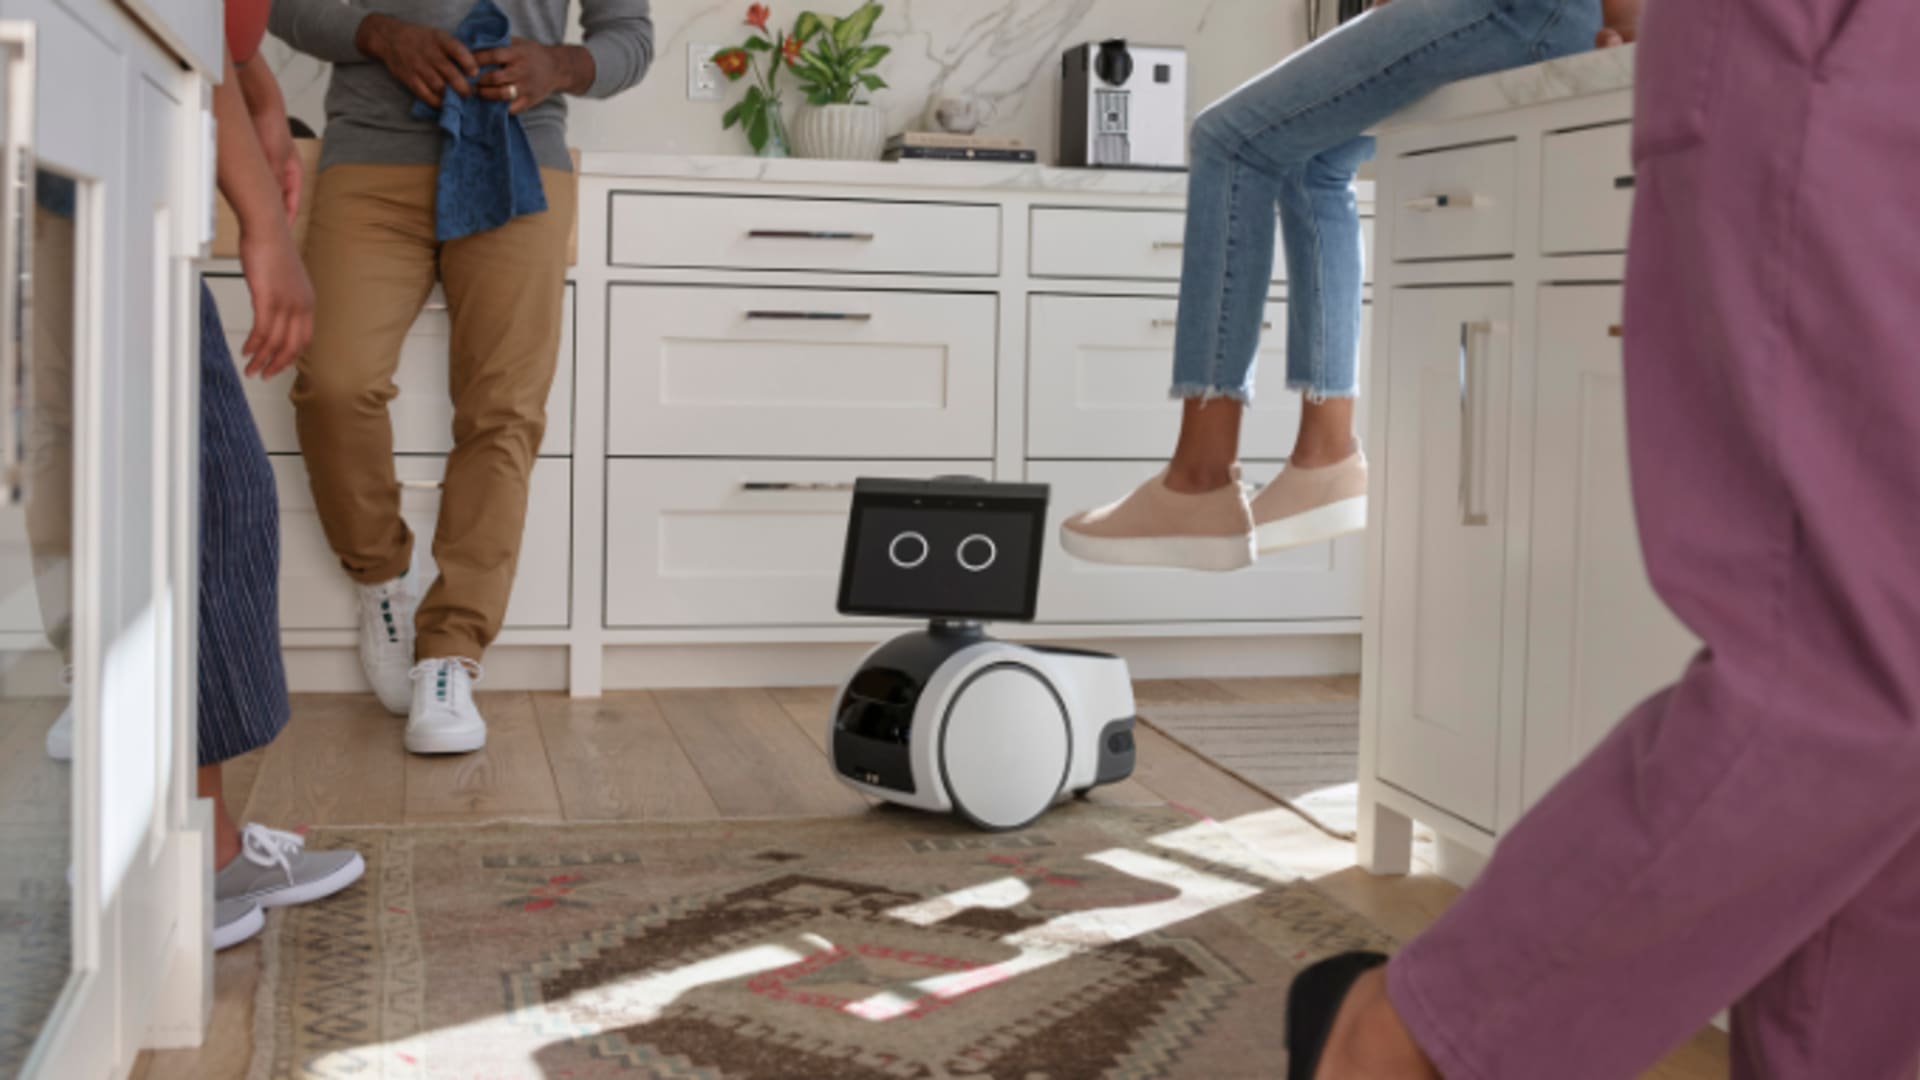 Amazon's Astro home robot